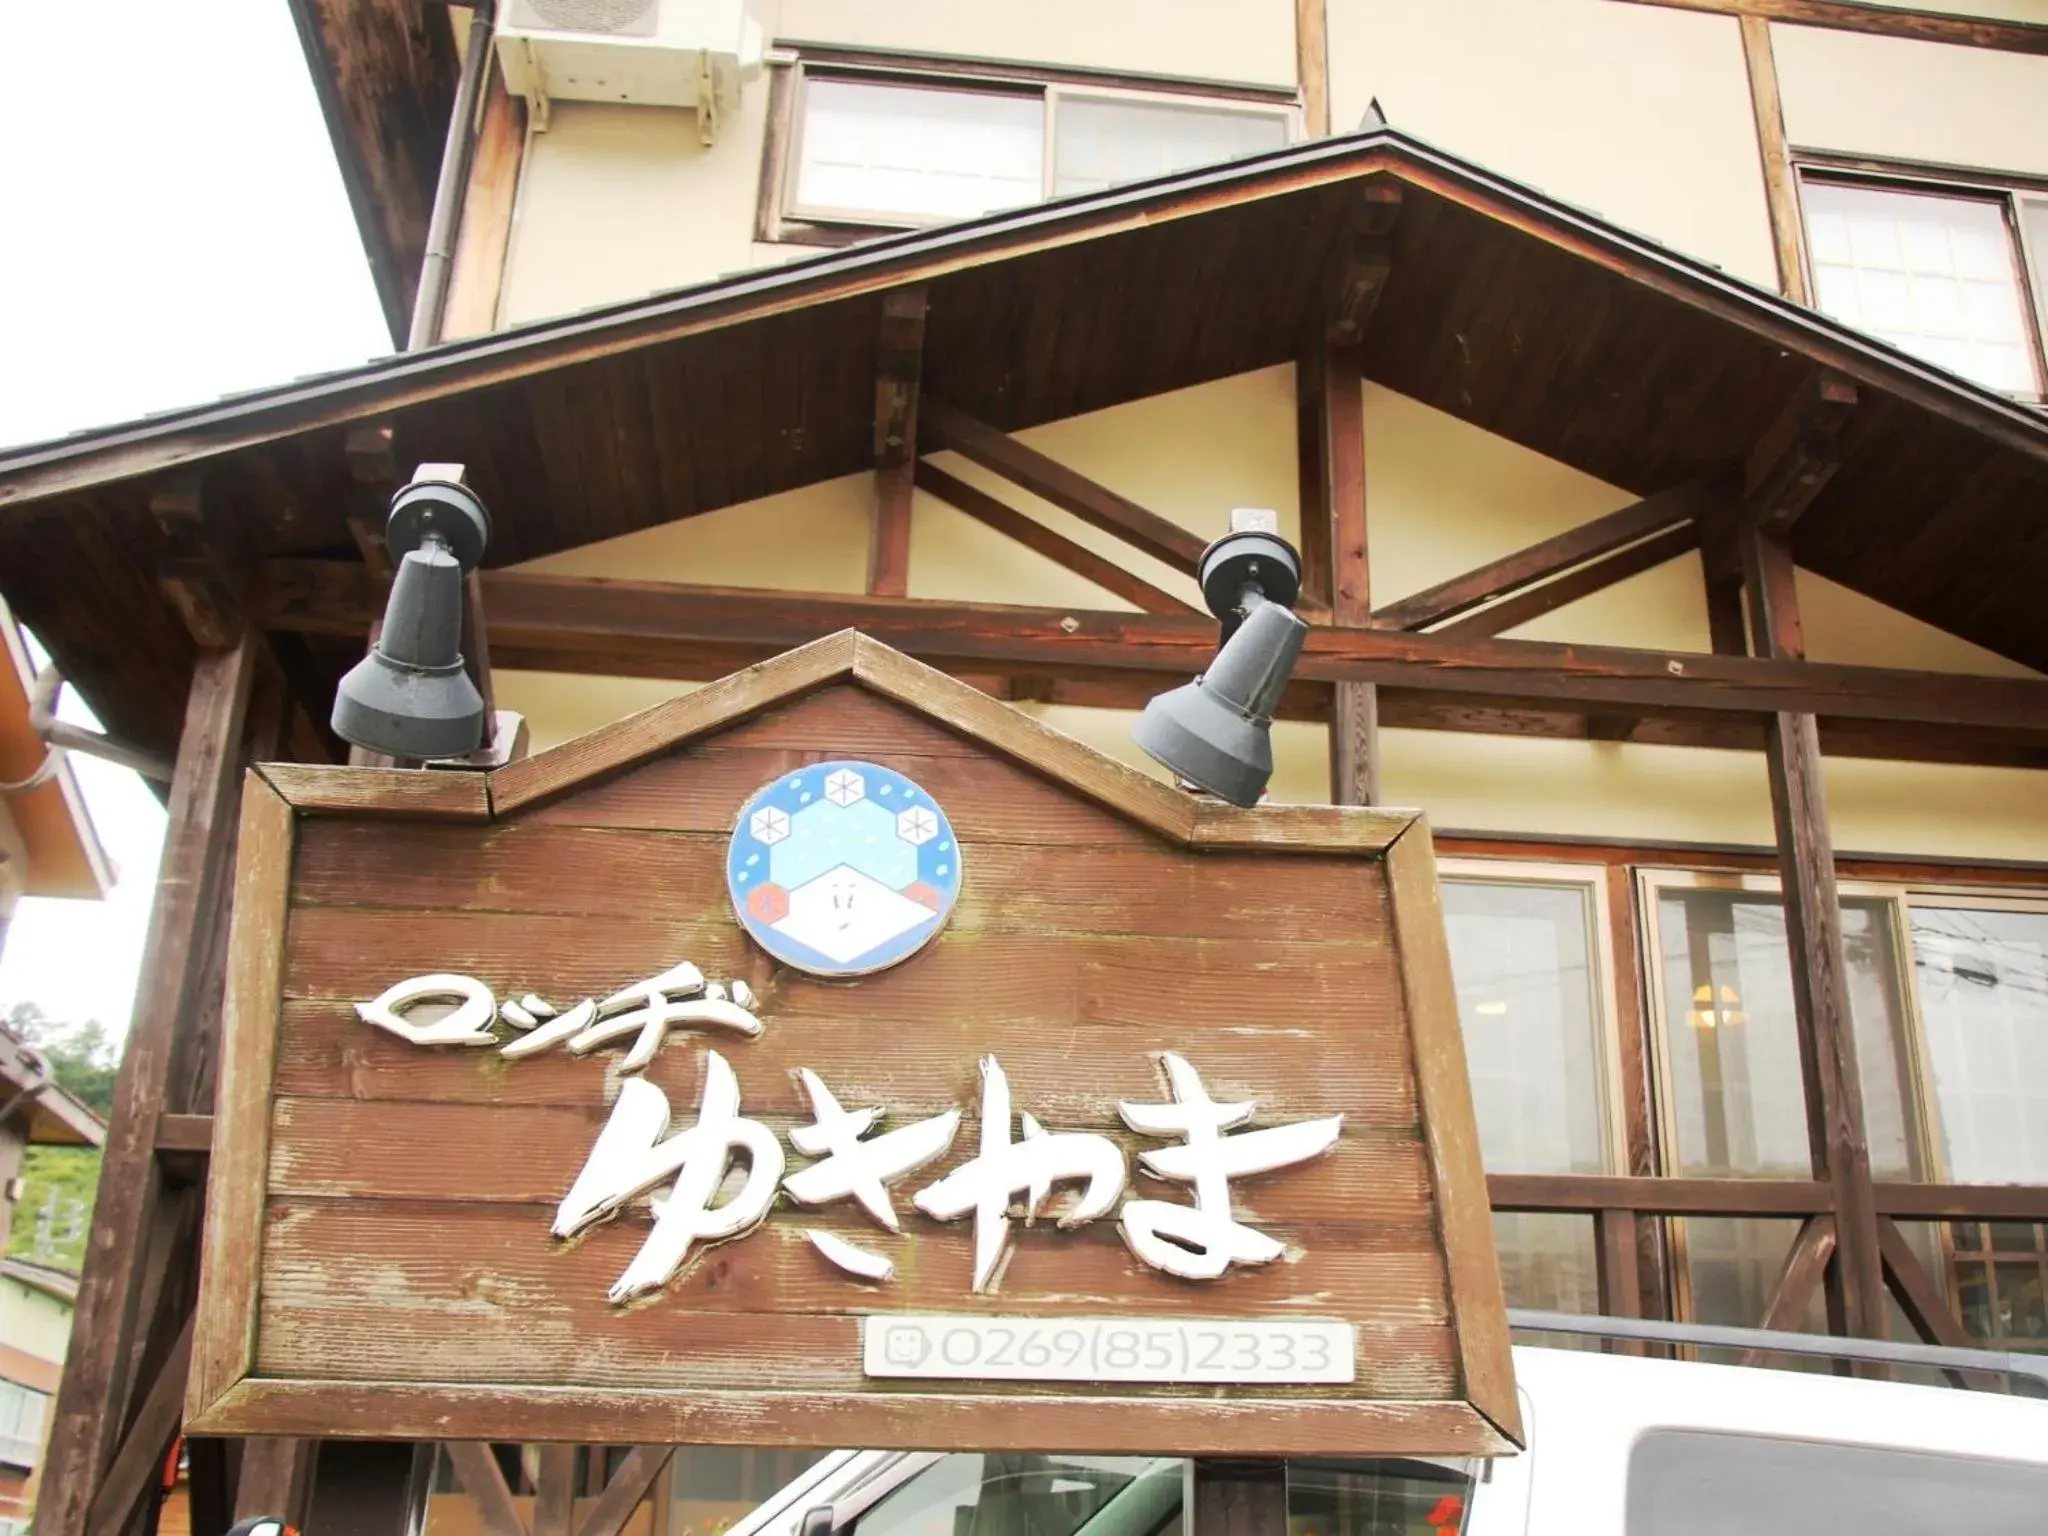 Property logo or sign in Lodge Yukiyama